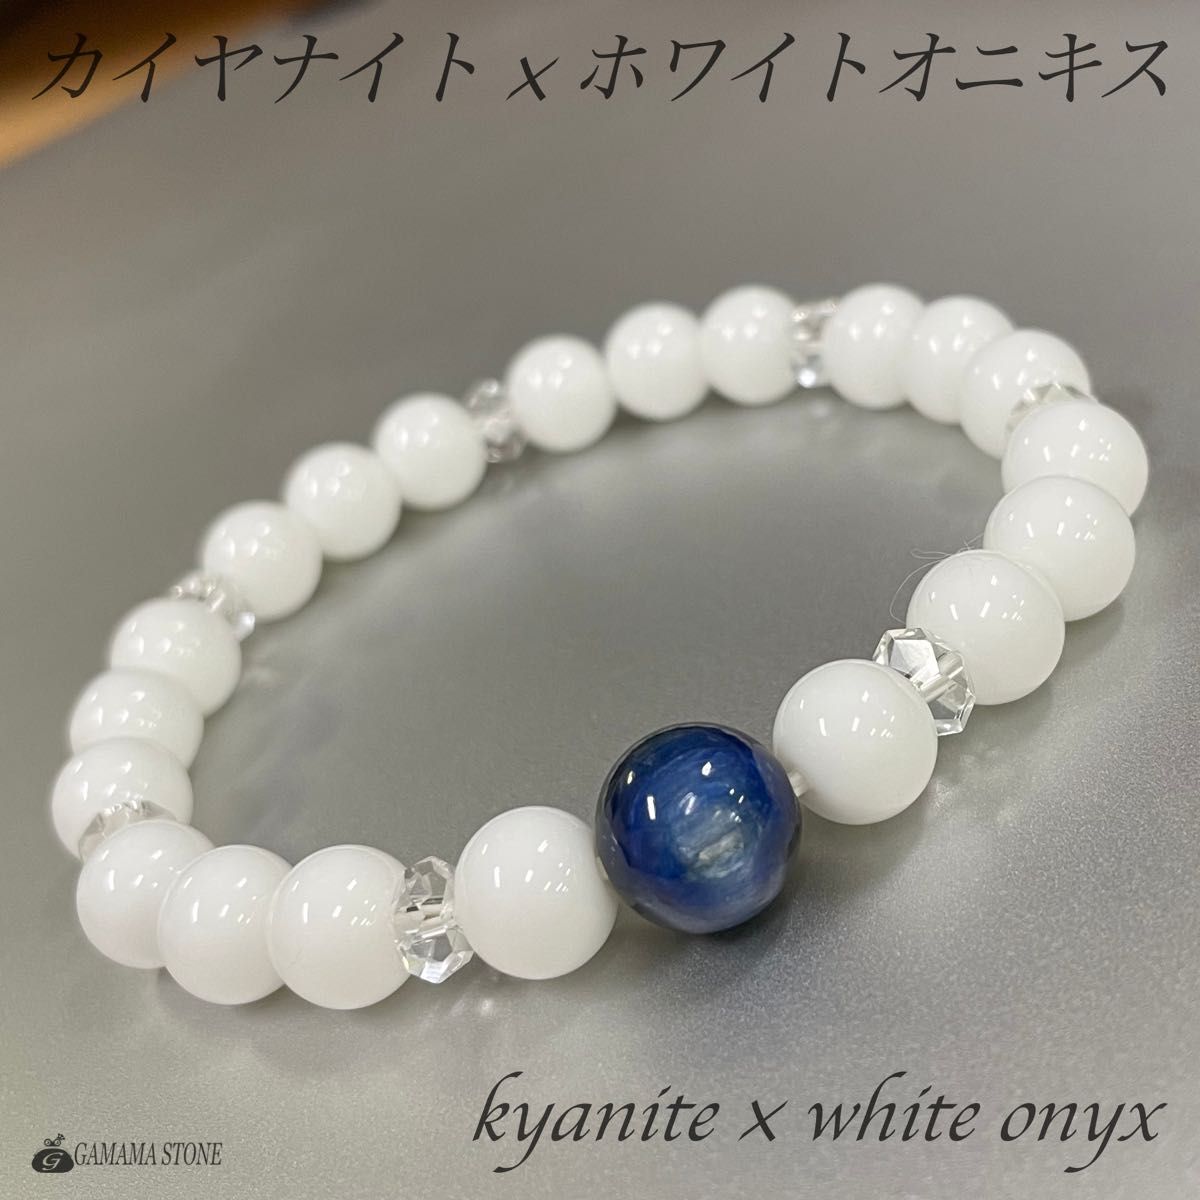 カイヤナイト × ホワイトオニキス ブレスレット 天然石